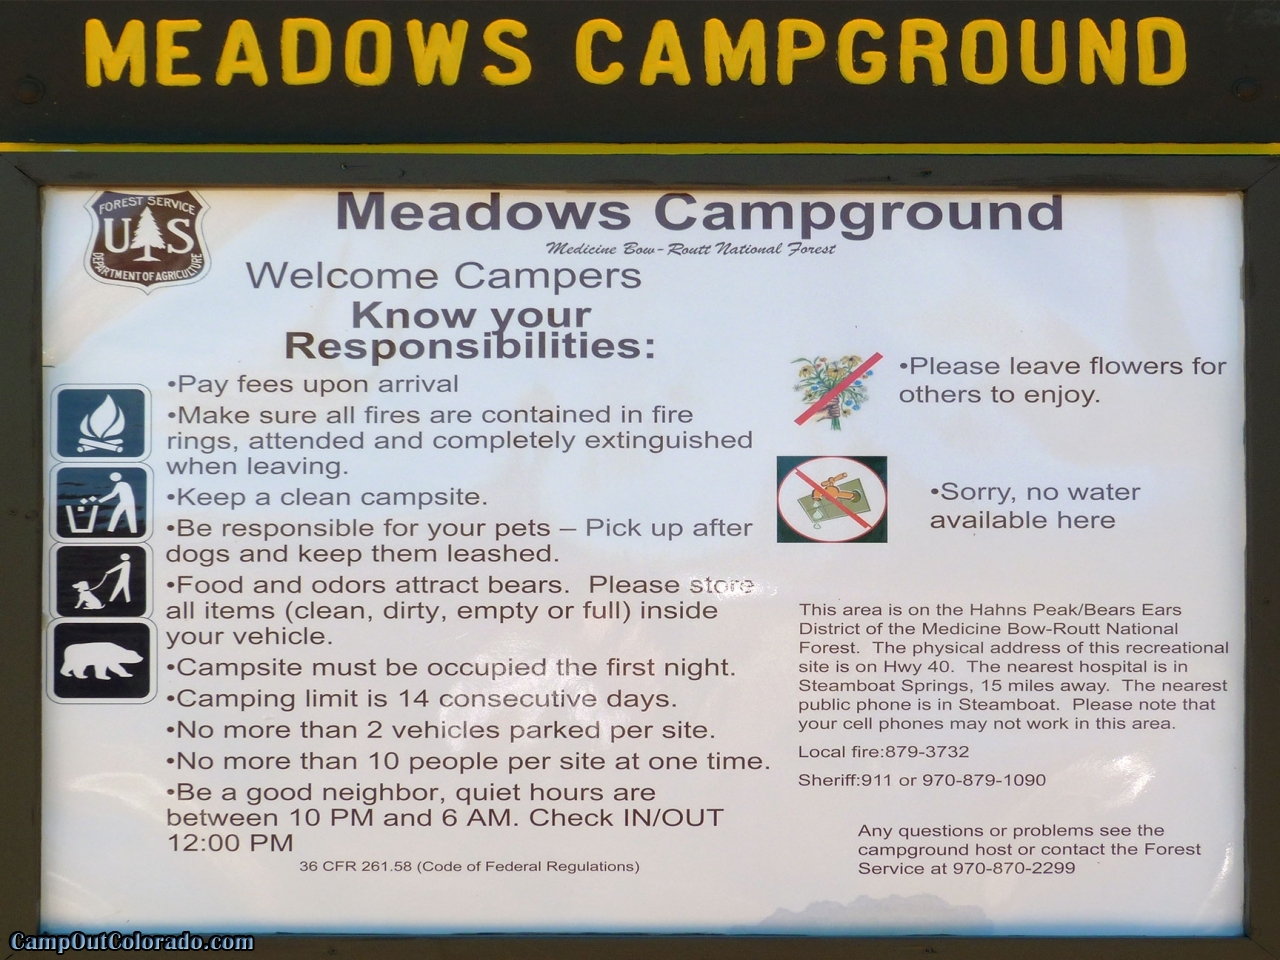 campoutcolorado-meadows-campground-rabbit-ears-kiosk